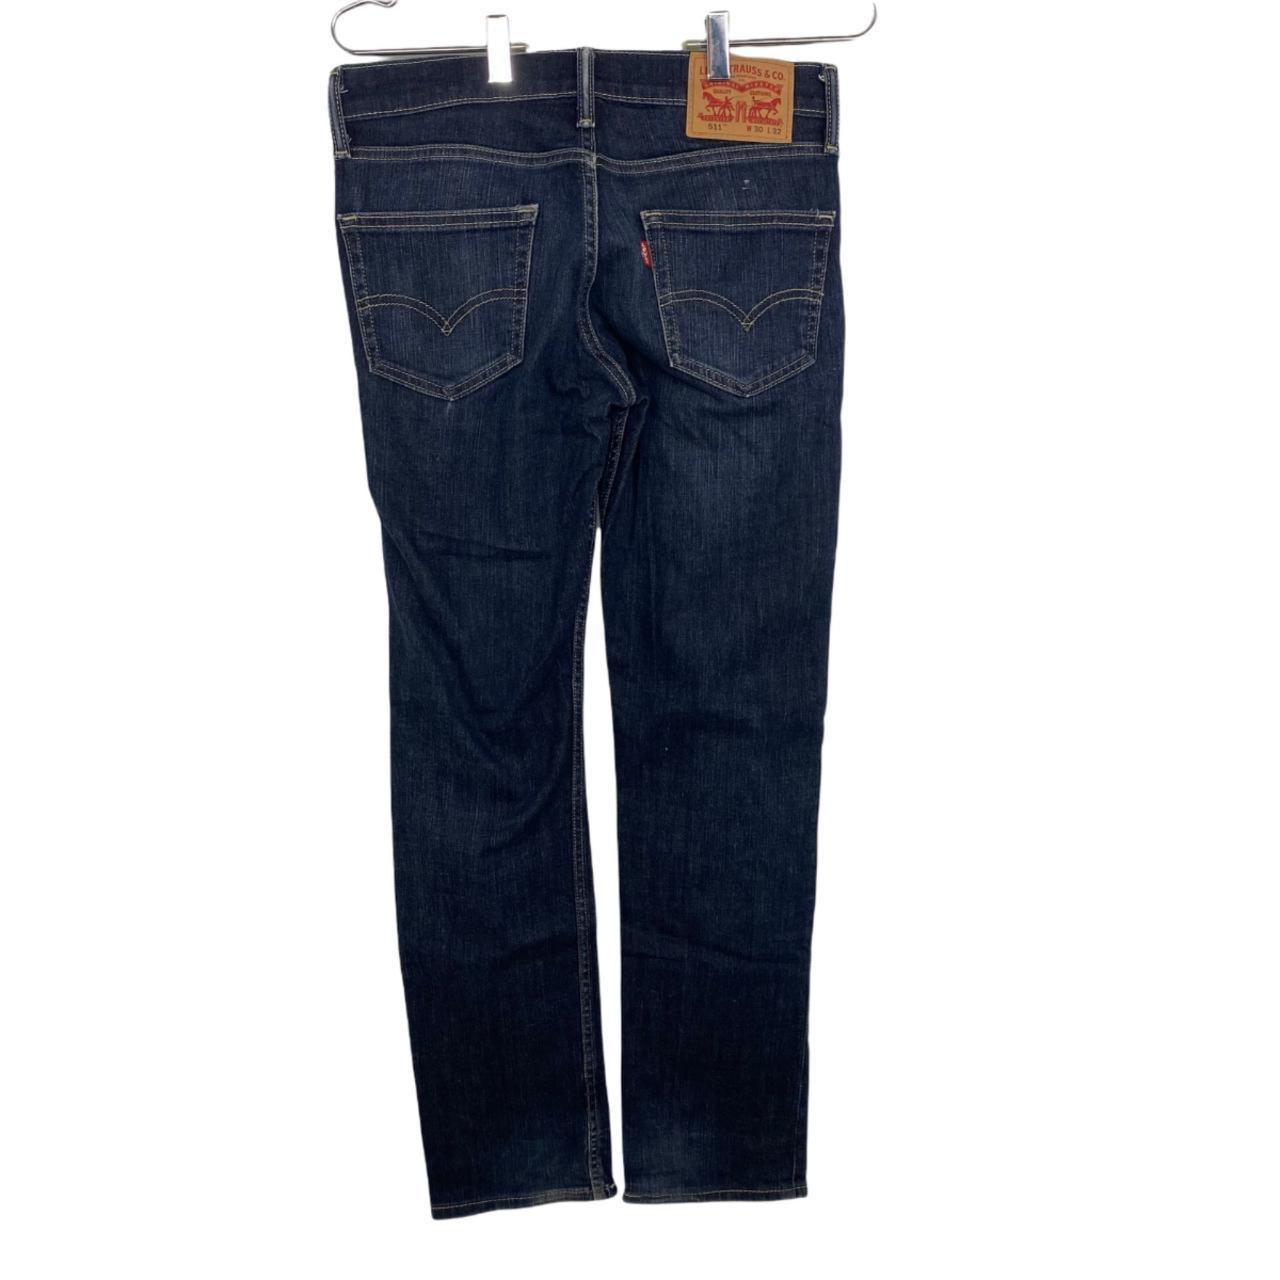 Levi’s 511 Blue Jeans Mens Size 30x29 Classic Fit... - Depop